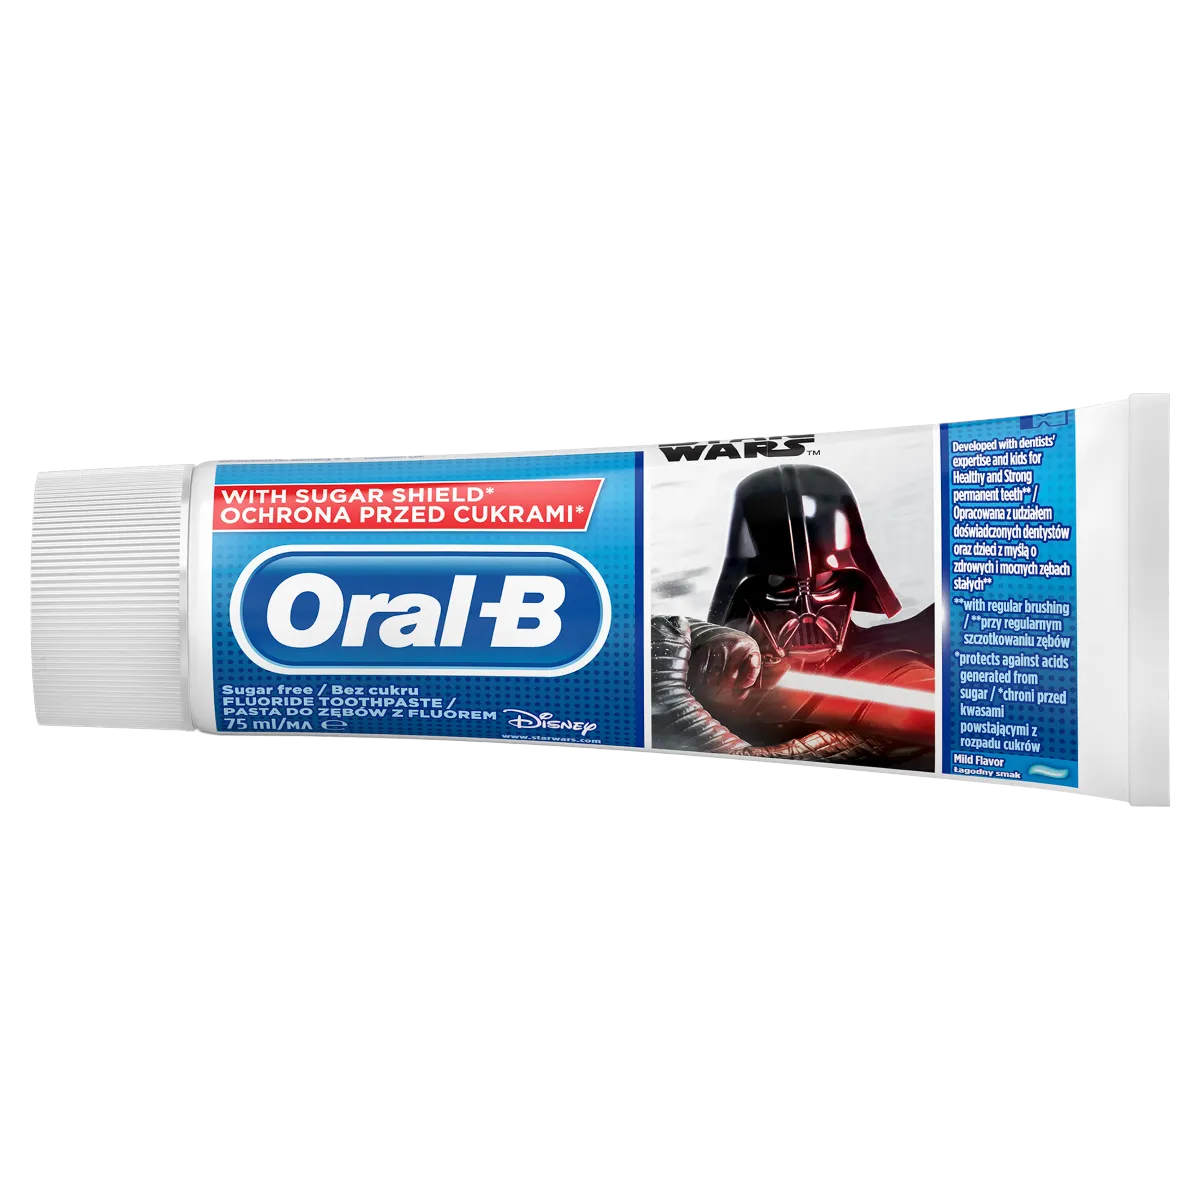 Oral-B Junior Star Wars dětská zubní pasta 75 ml